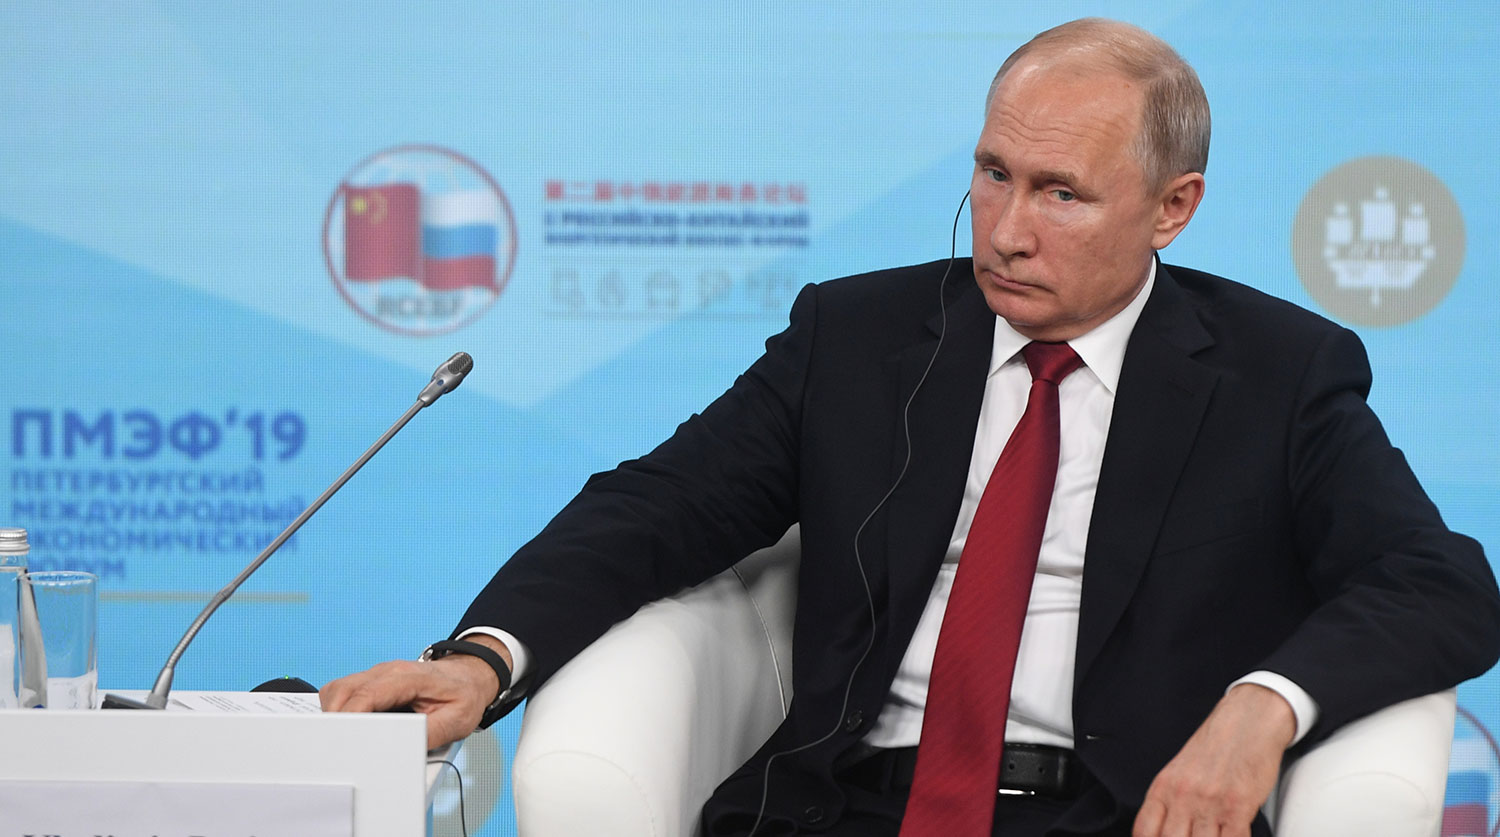  "Ситуация с Huawei является началом технологической войны" - Путин